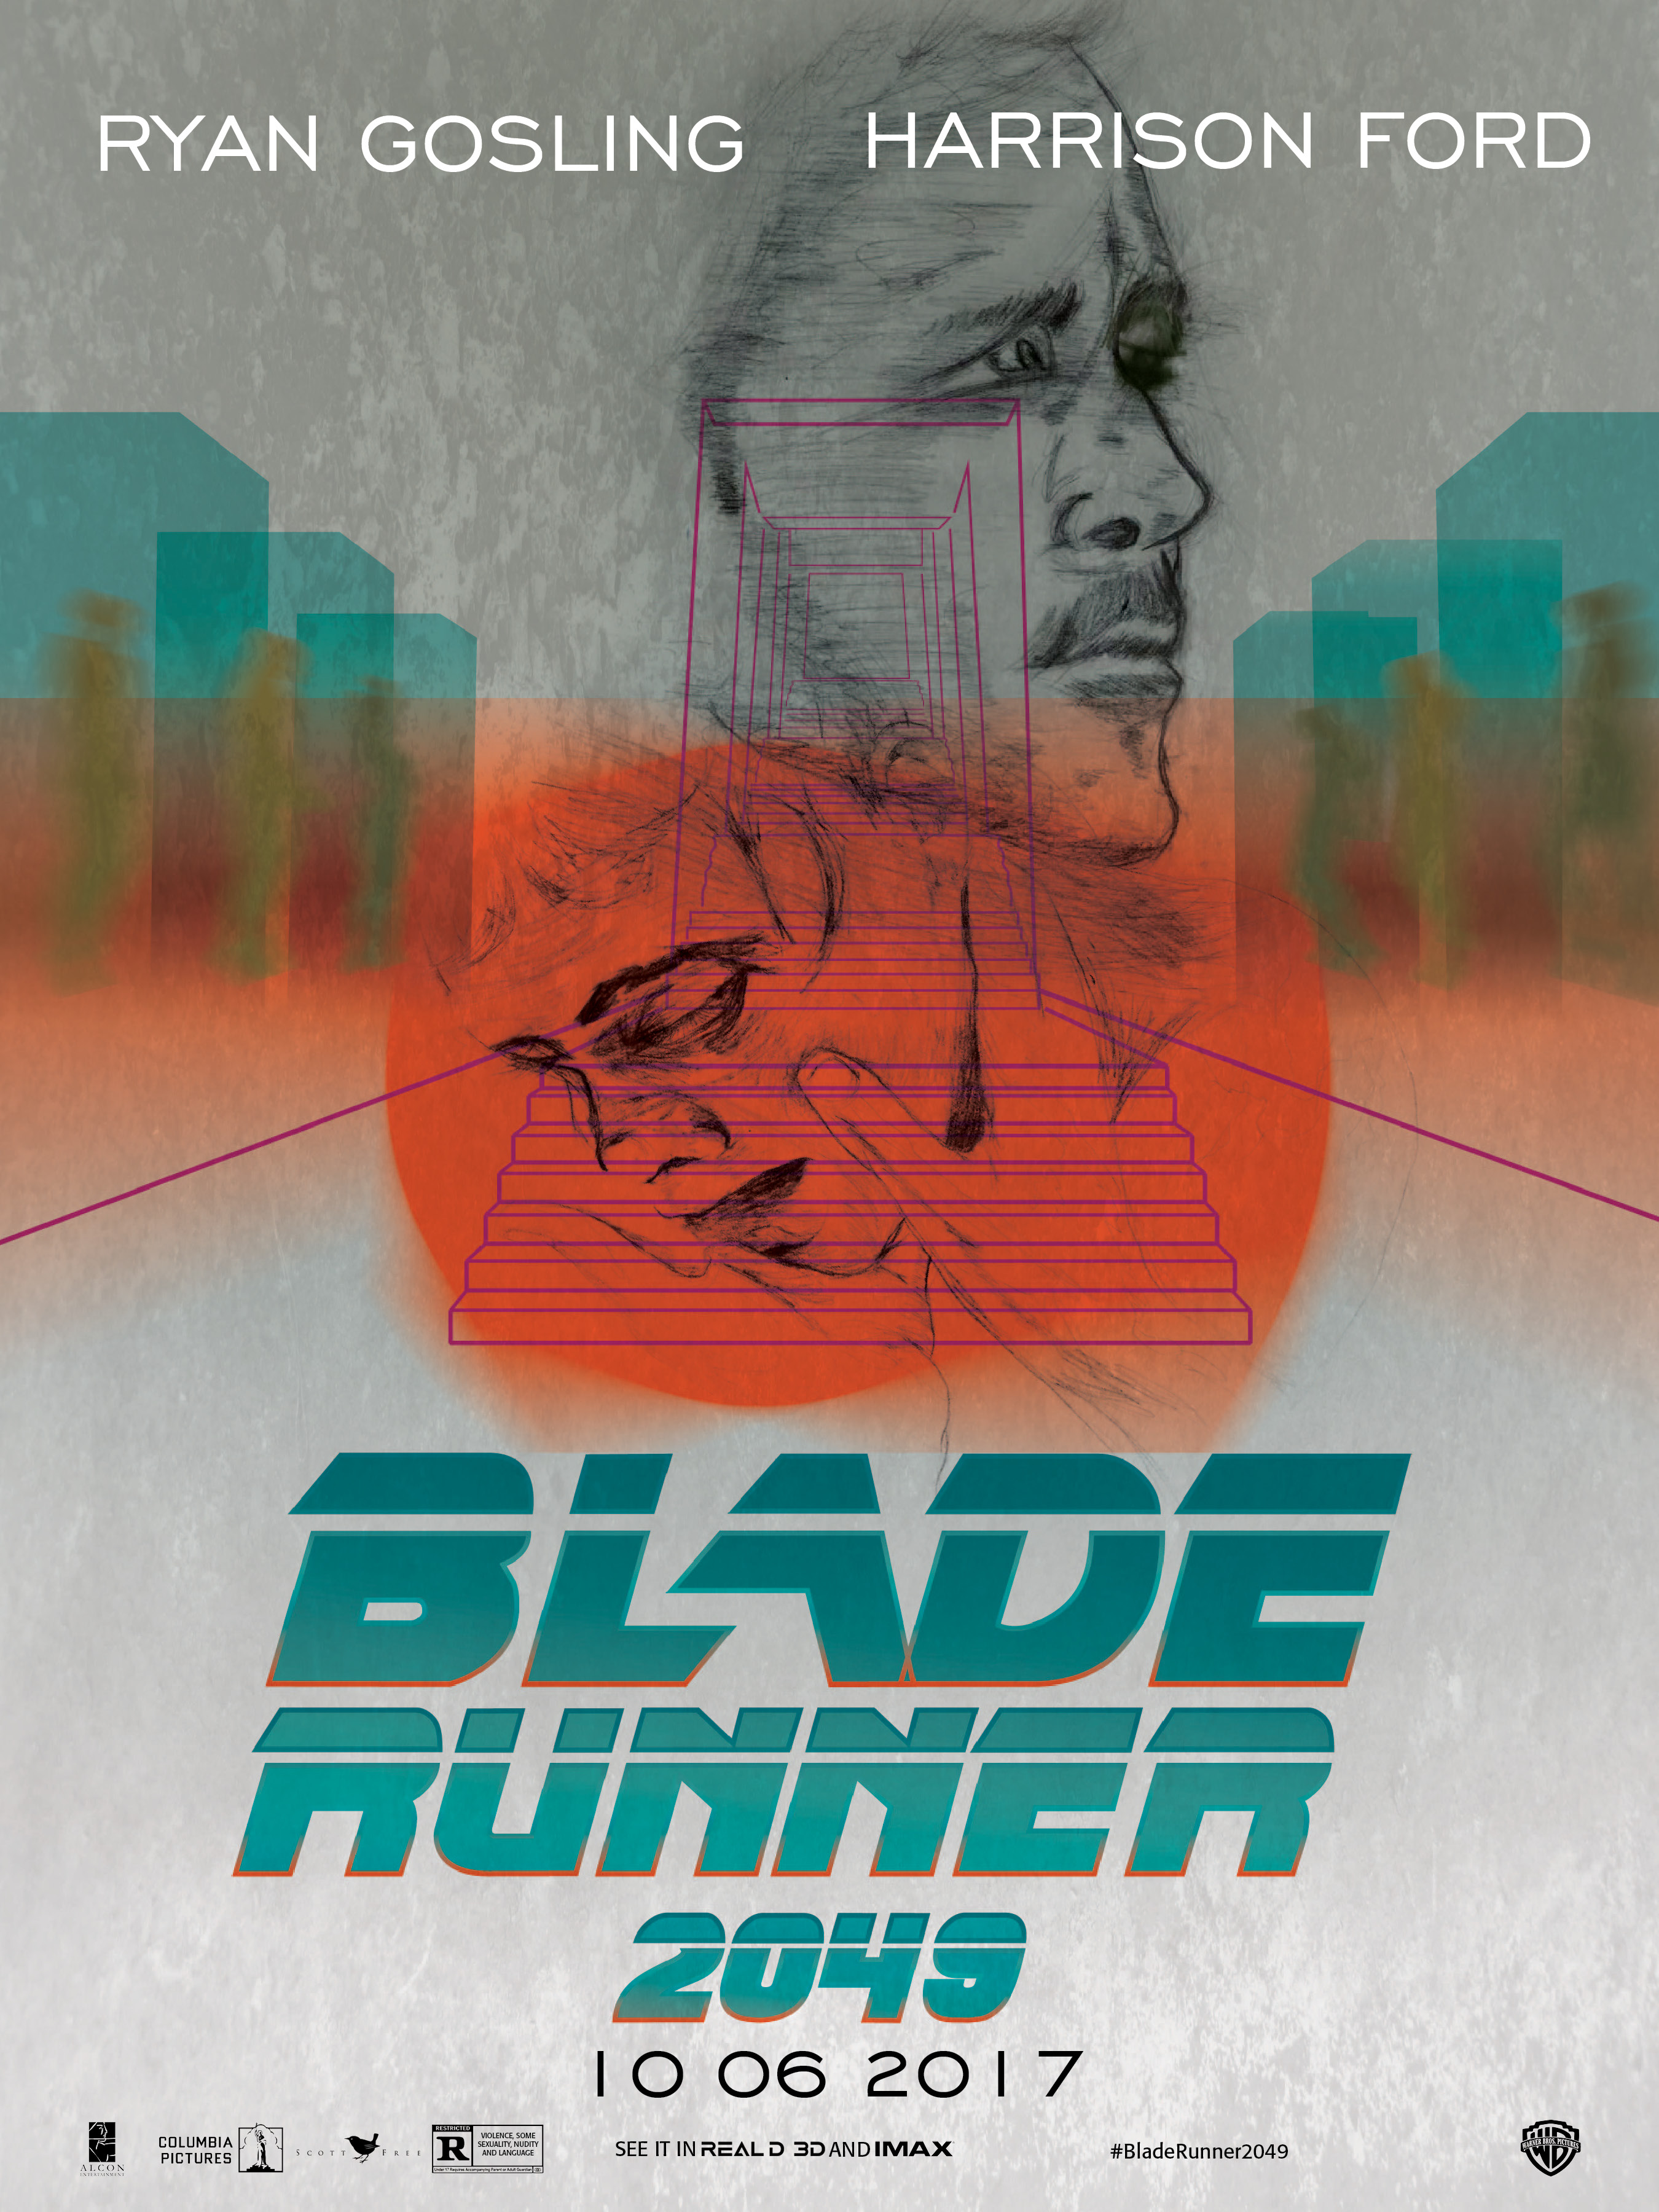 Poster Redesign: Blade Runner 20149